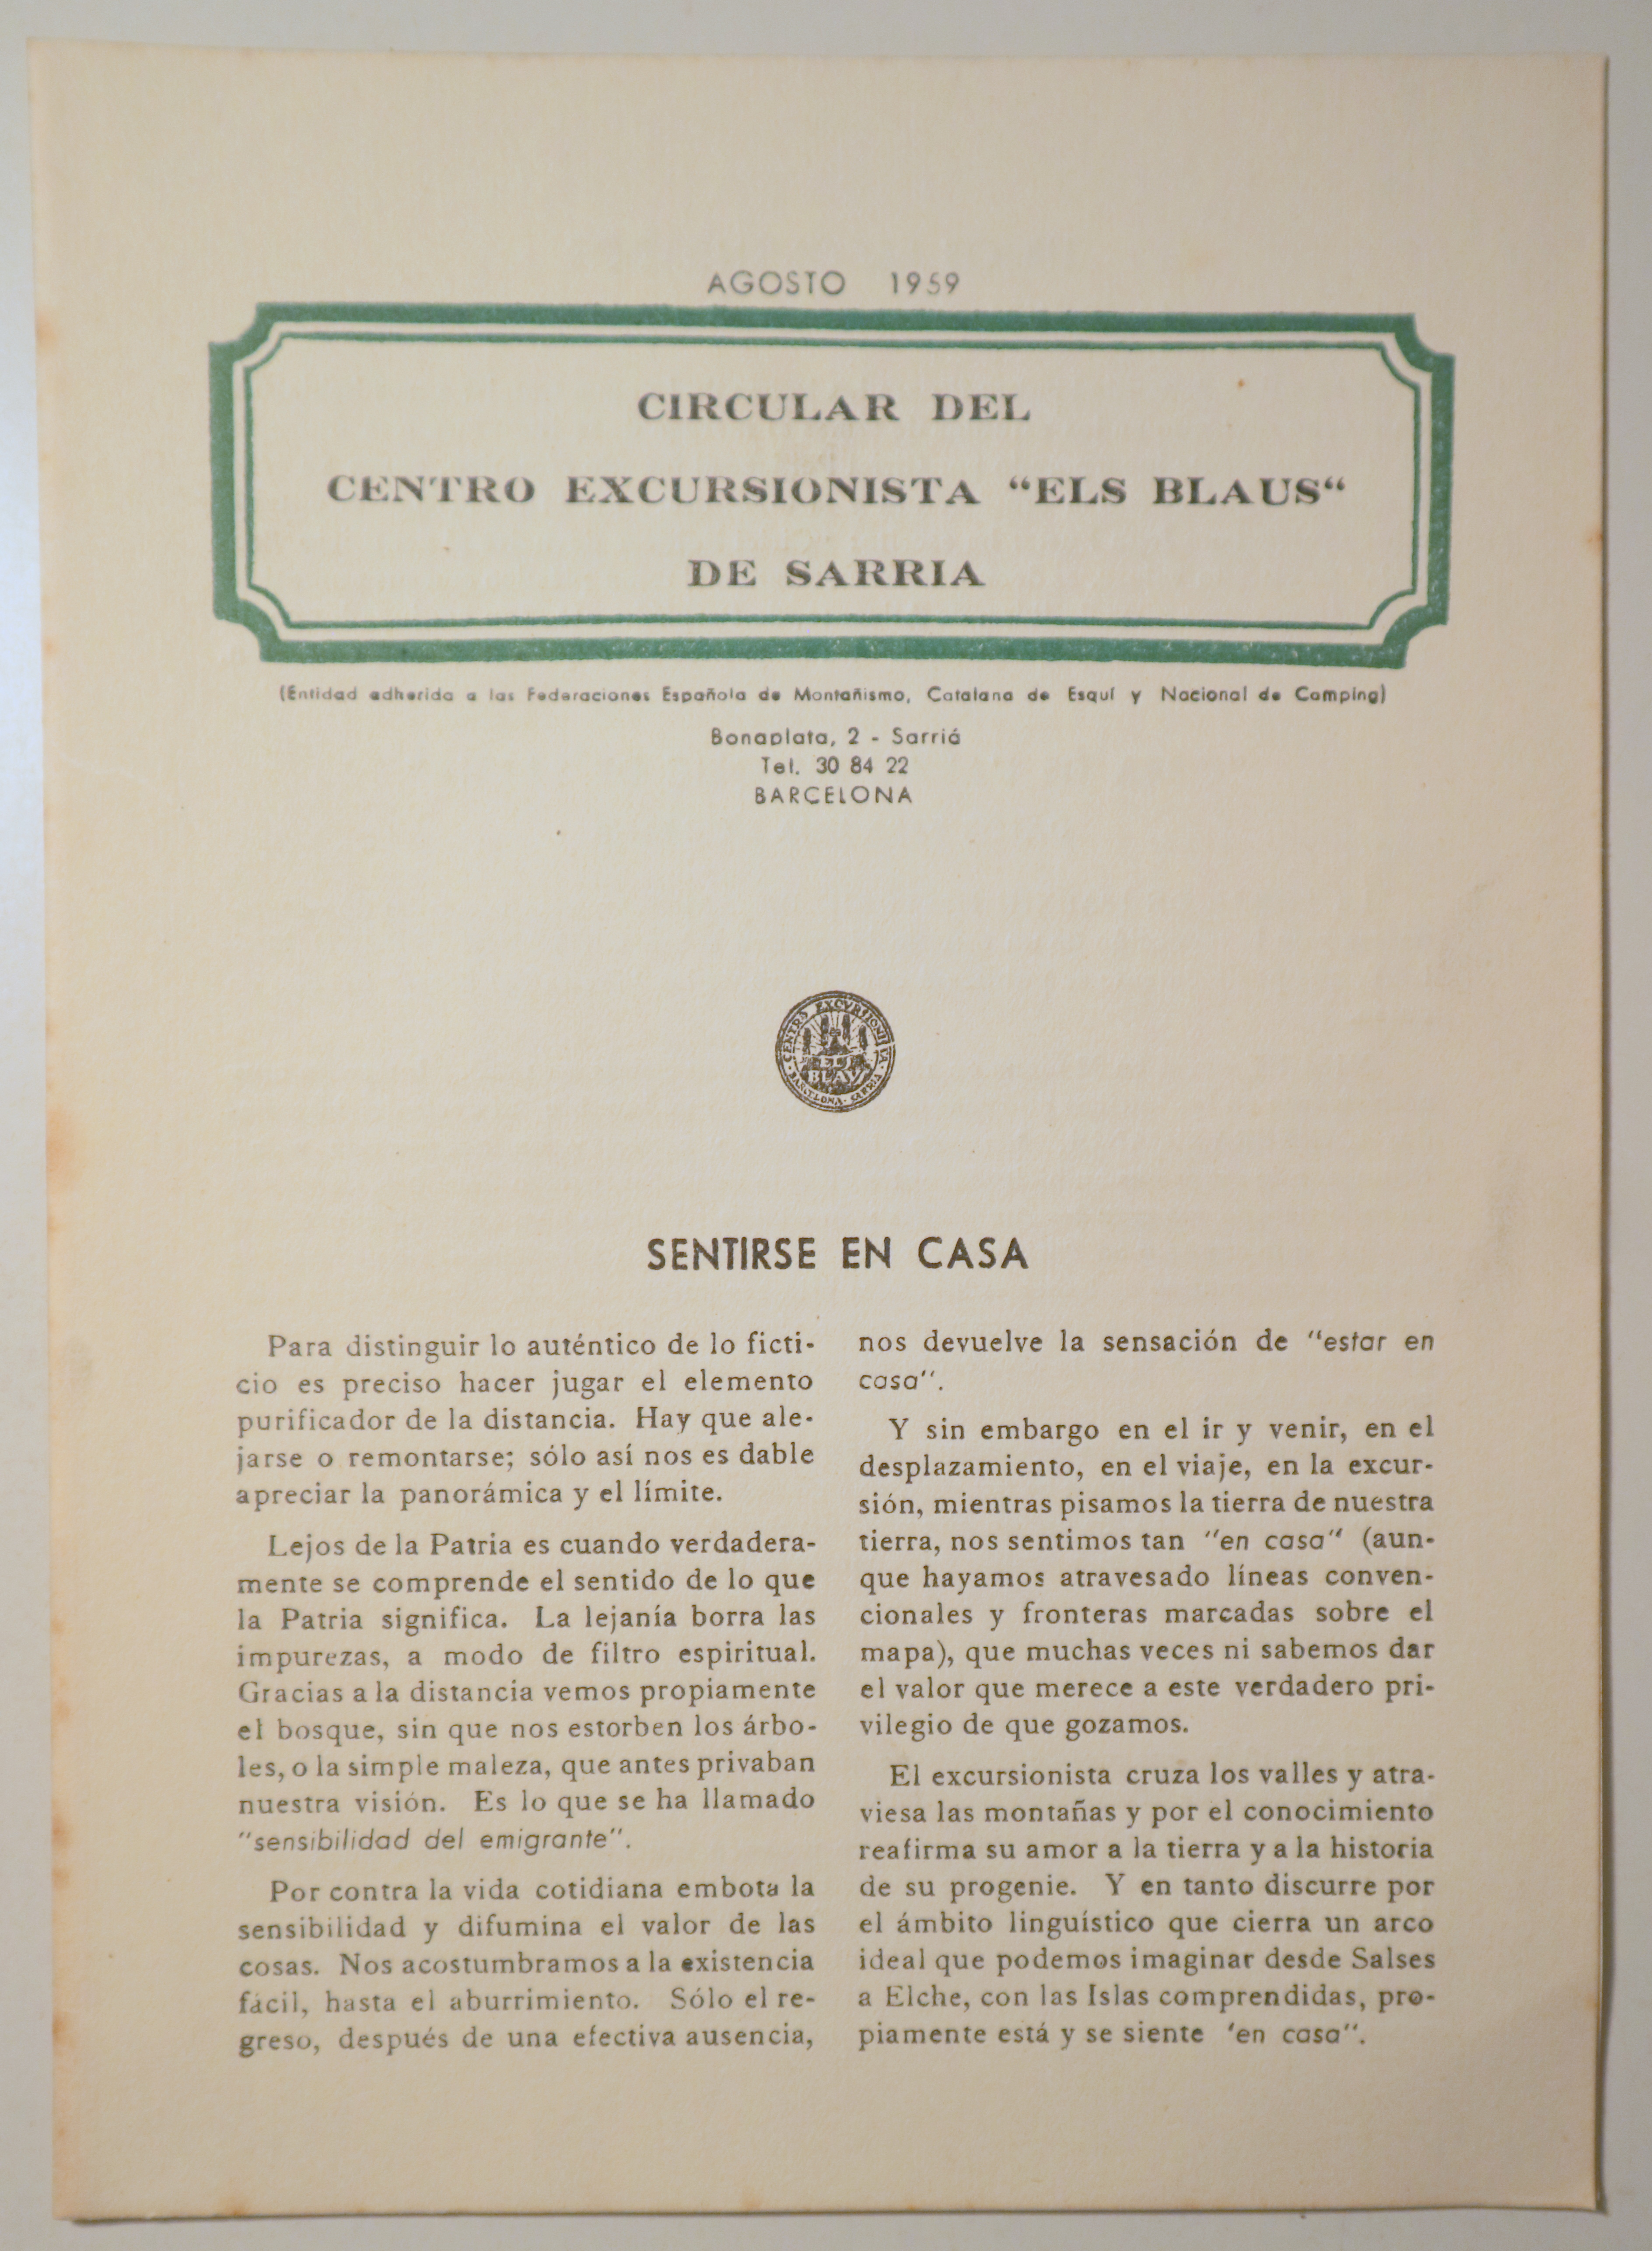 CIRCULAR DEL CENTRO EXCURSIONISTA "ELS BLAUS" DE SARRIÀ. Agosto 1959 - Barcelona 1959